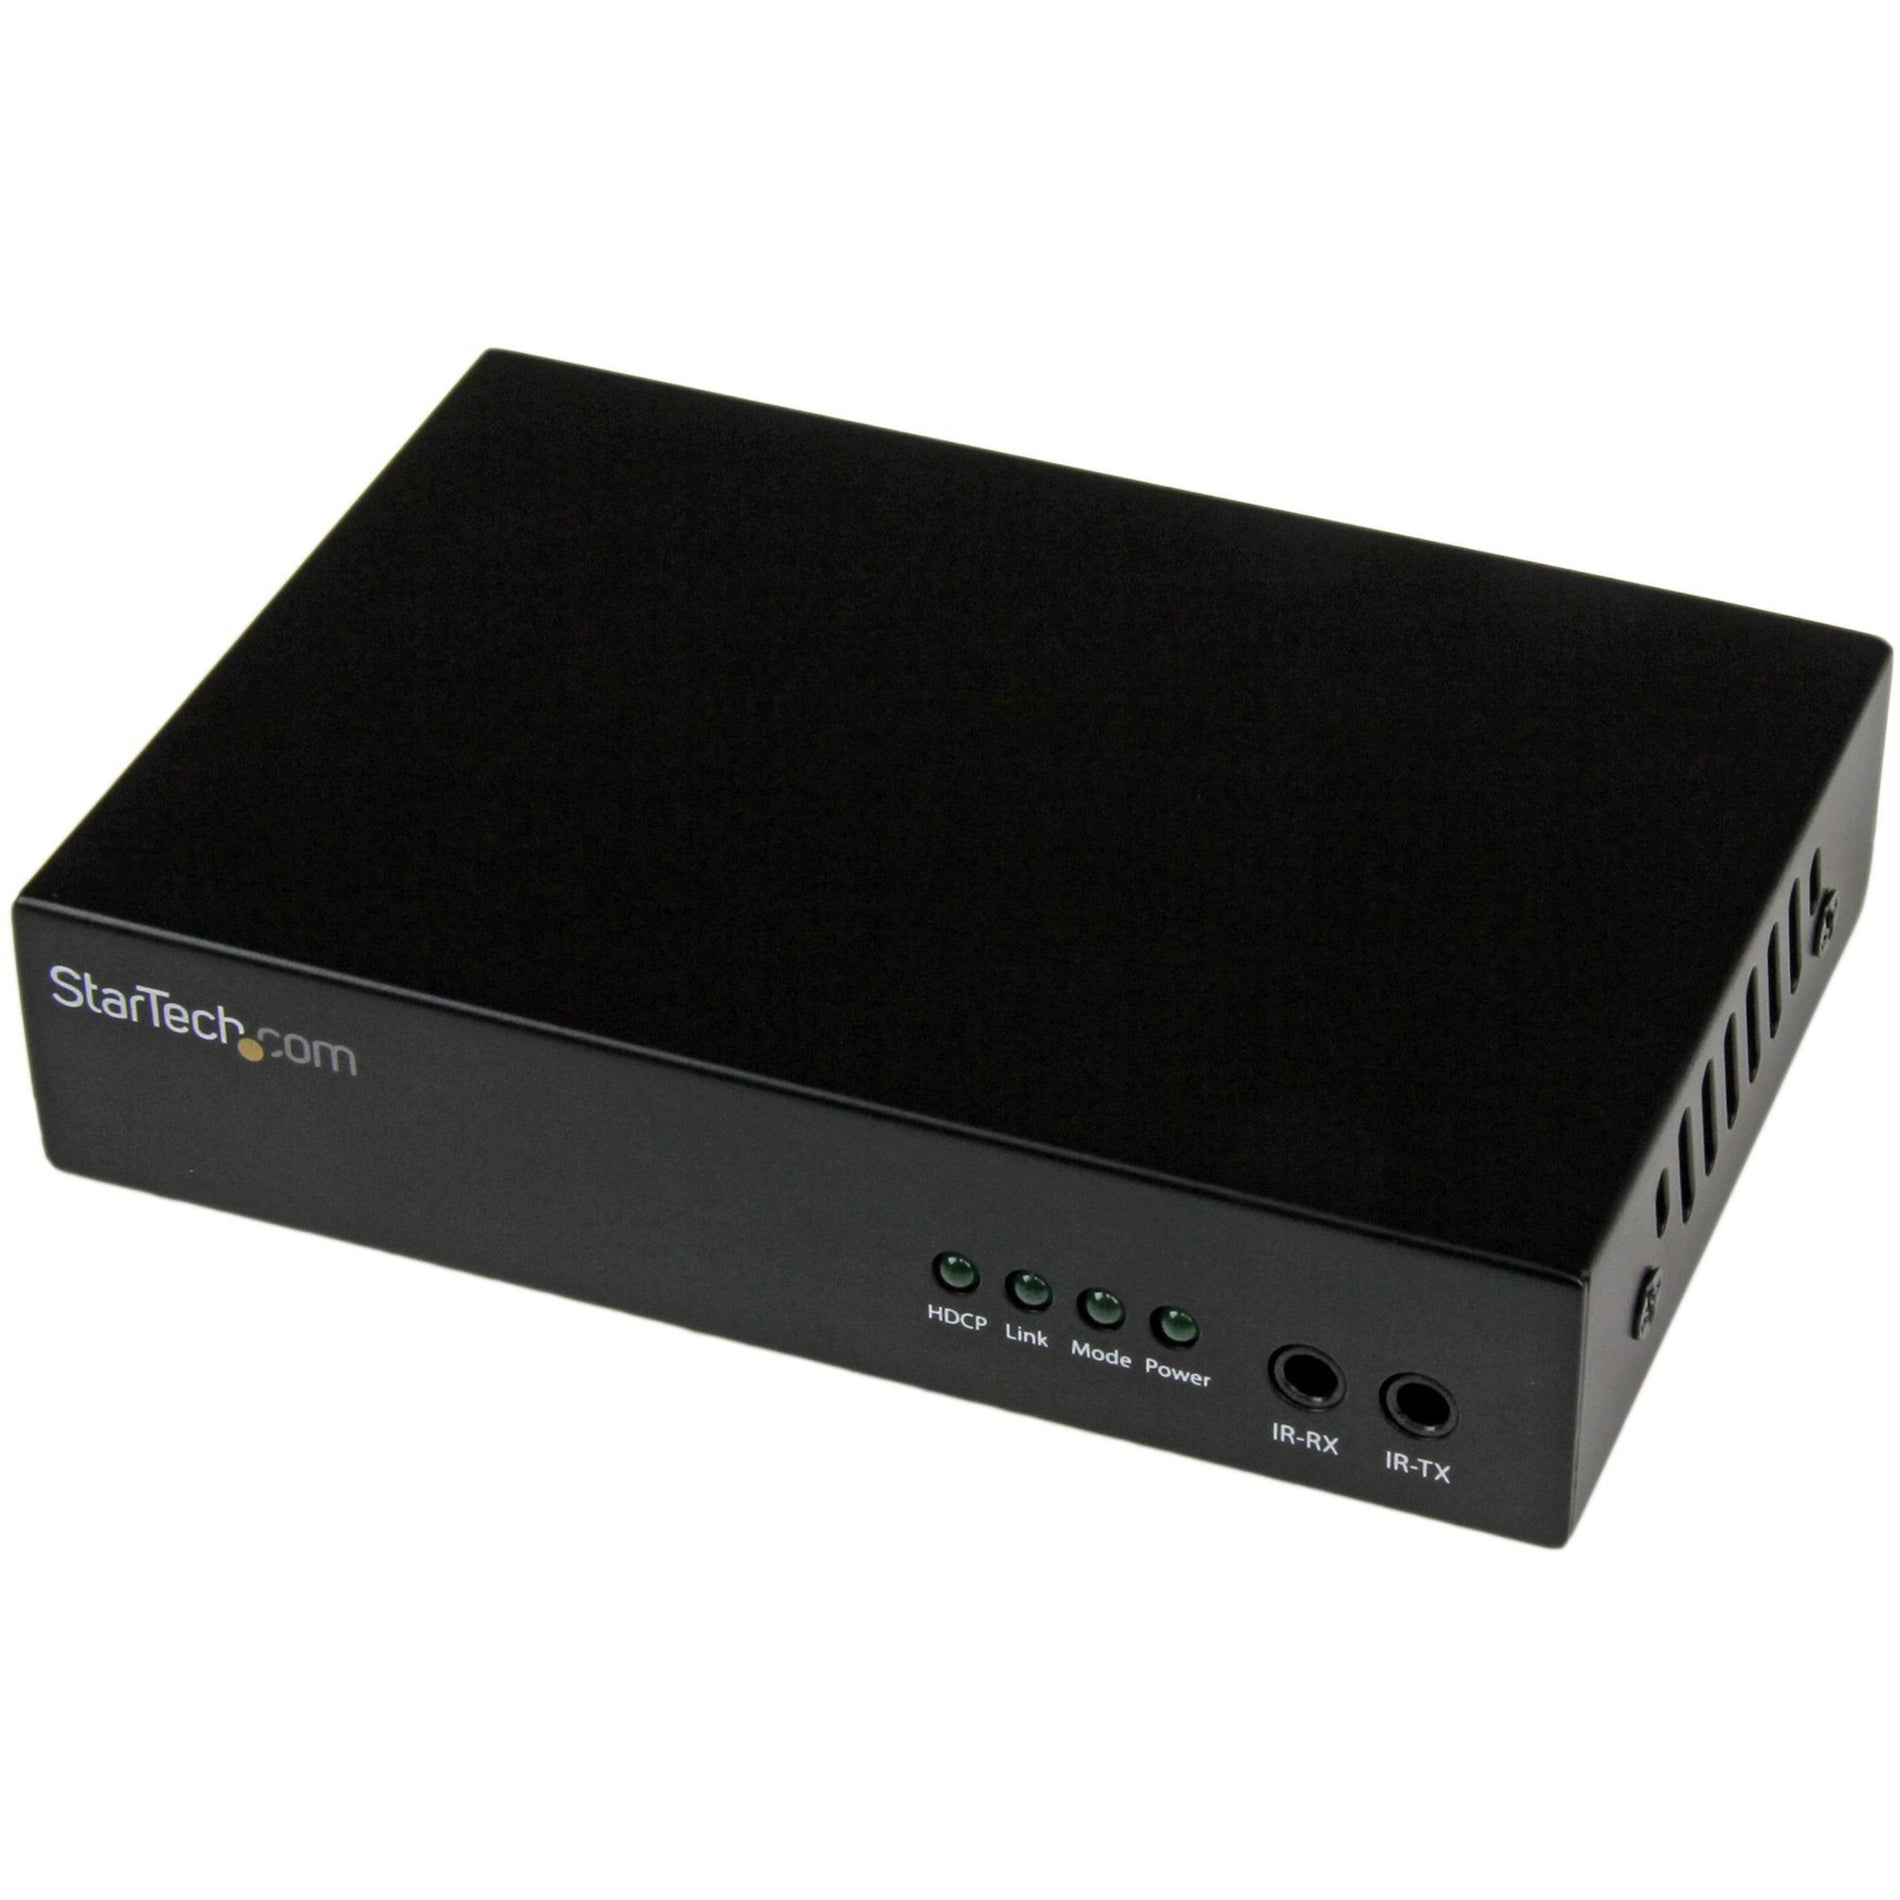 StarTech.com STHDBTRX HDMI over Cat5 / Cat6 Receiver for ST424HDBT - 230ft (70m) - 4K / 1080p, Video Extender Receiver